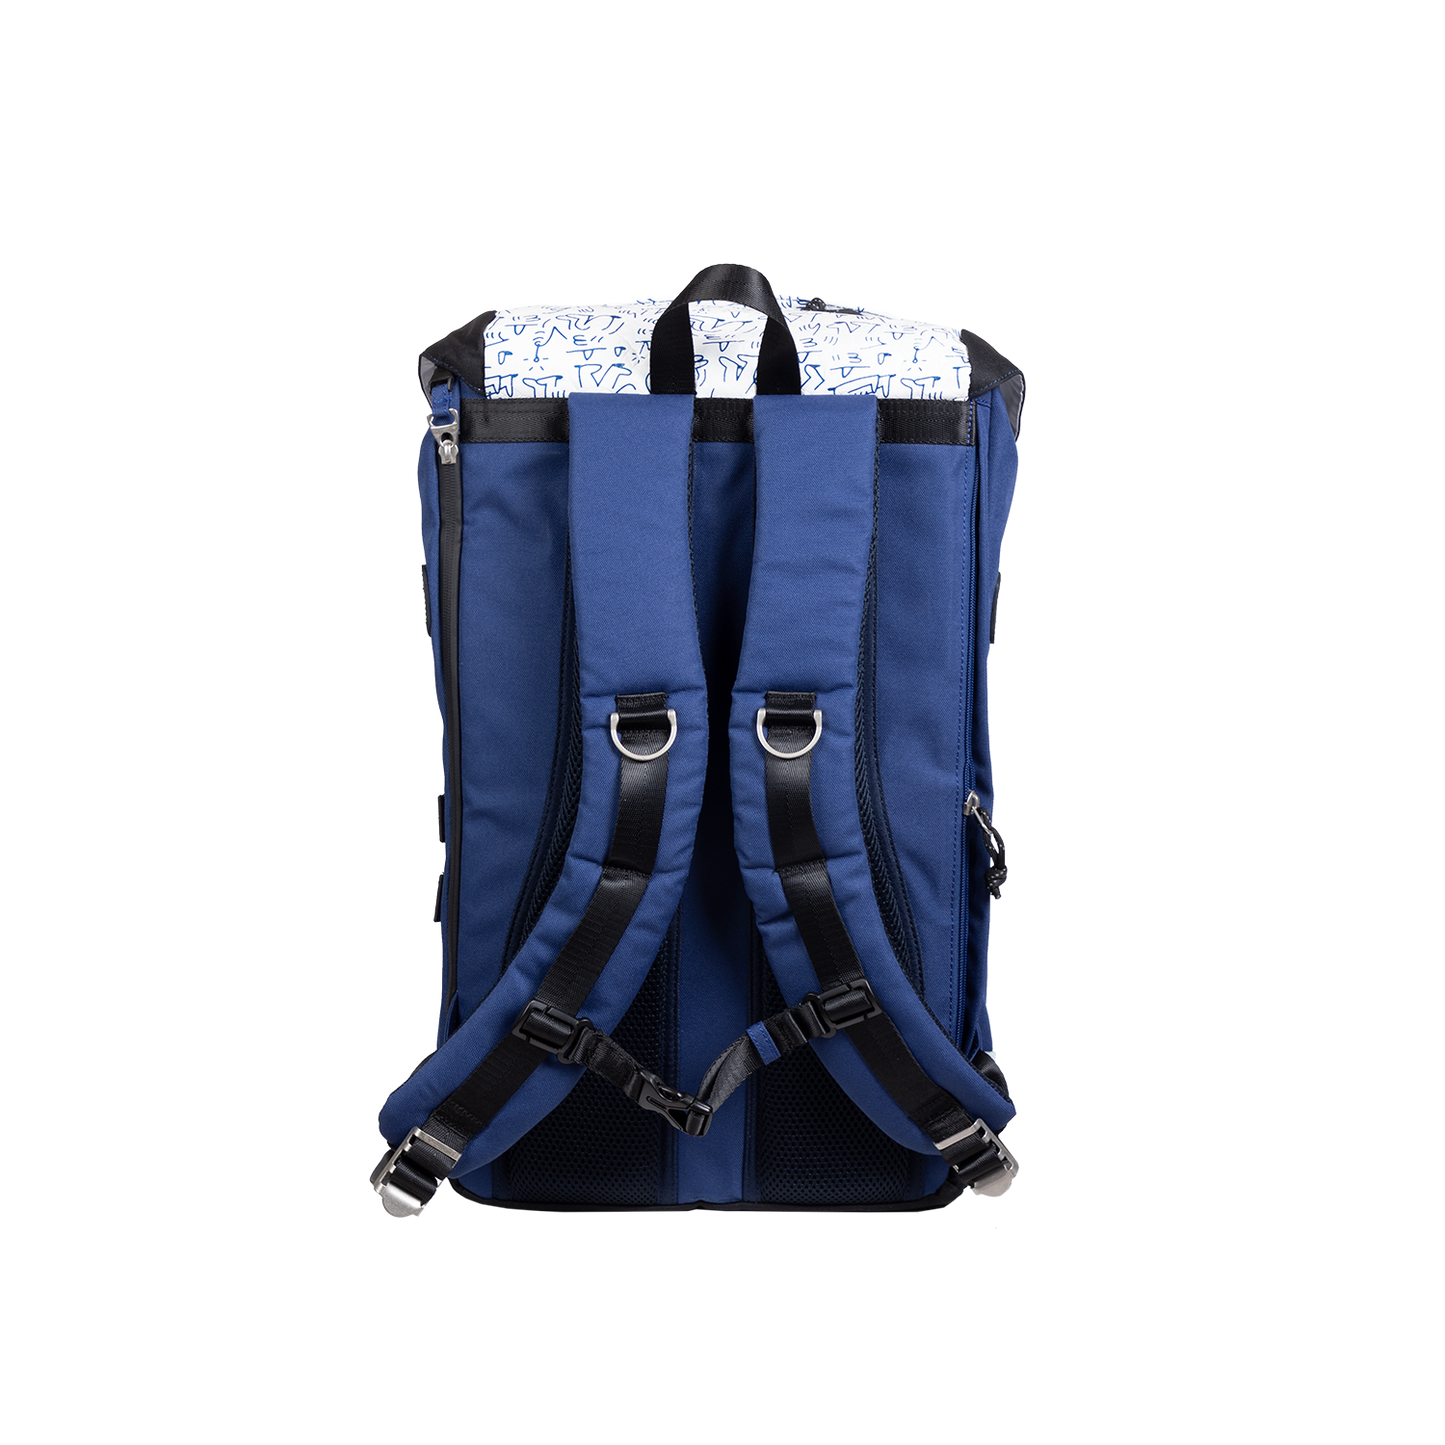 Colorado Lucas Beaufort Series Backpack